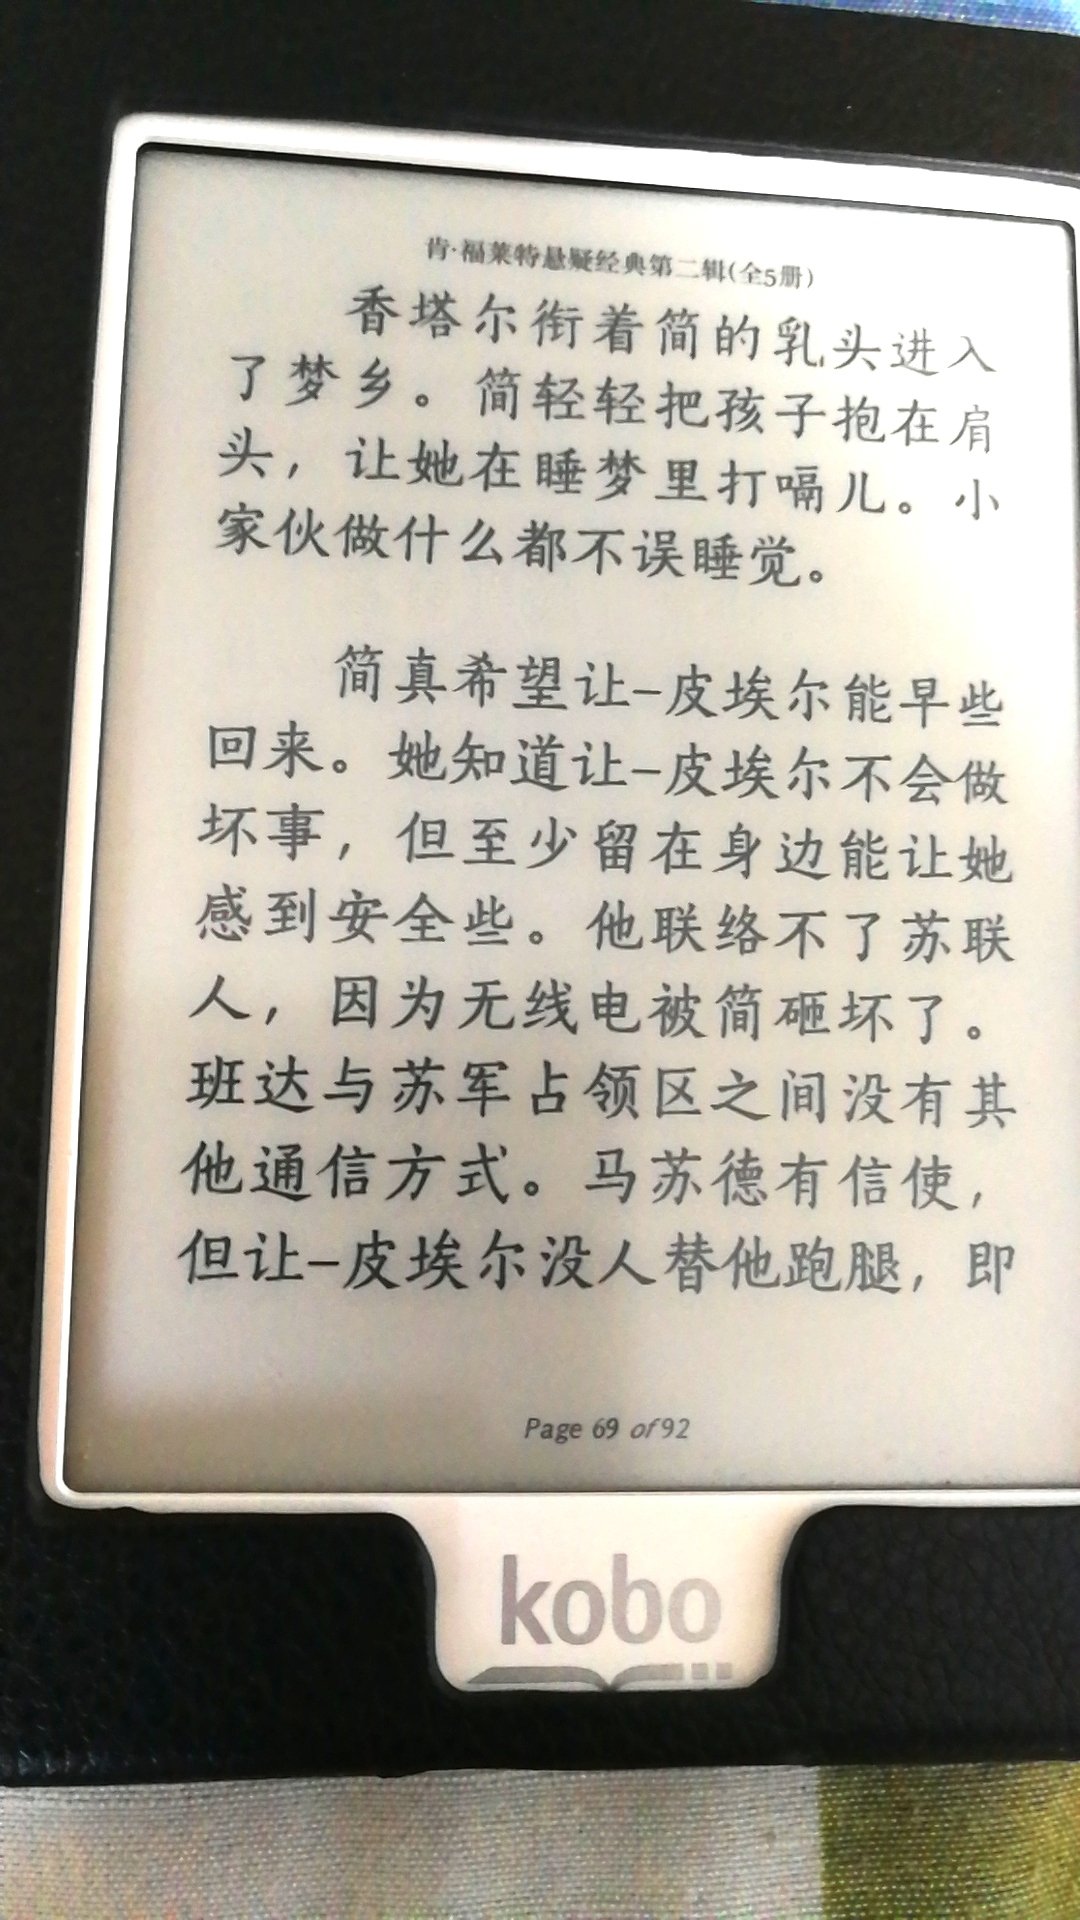 书不错，学习古文经典书籍。中华书局，值得信赖。